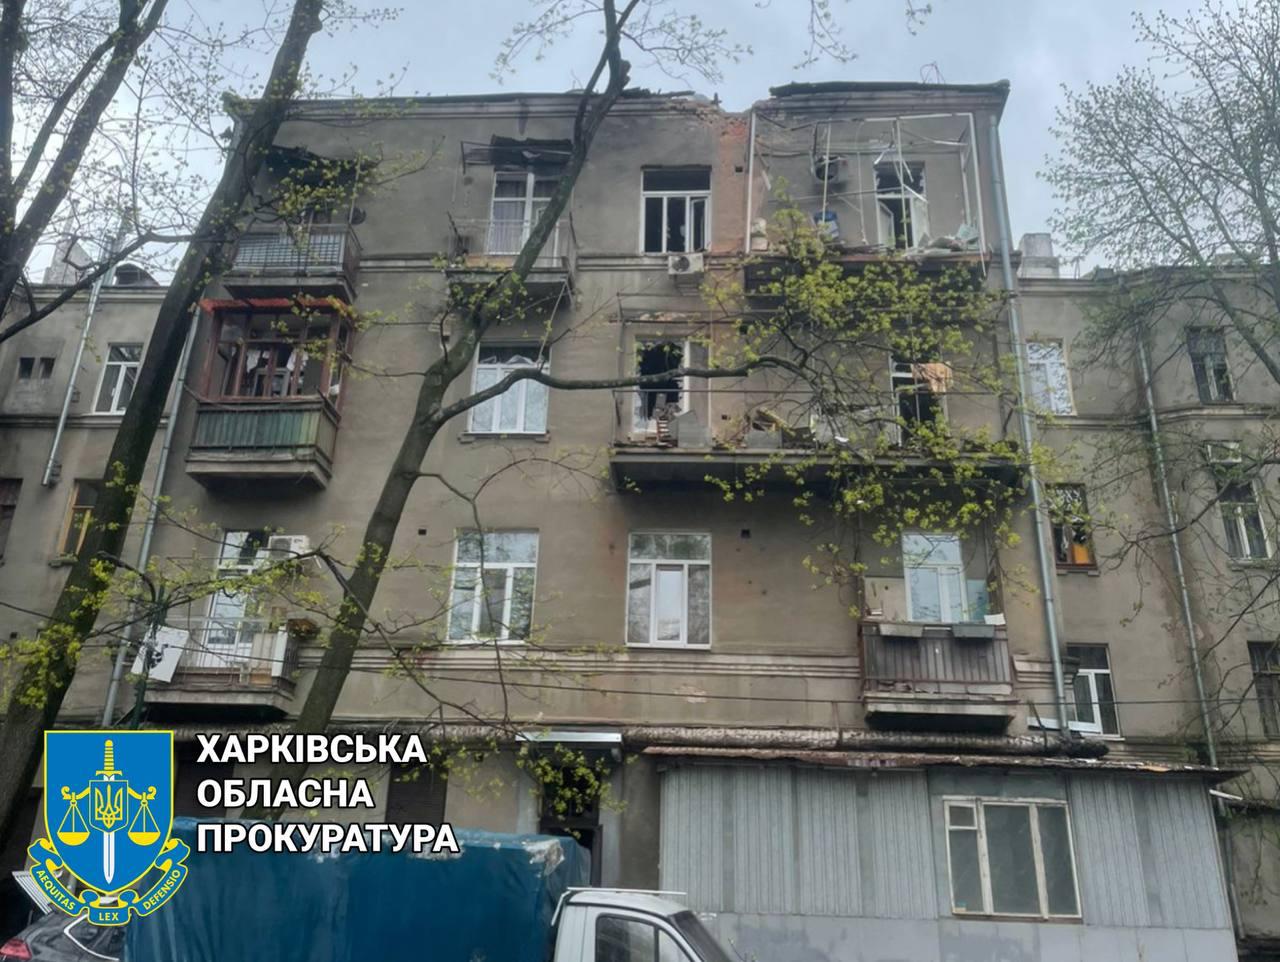 5 загиблих через обстріл окупантами двох центральних  районів Харкова - розпочато розслідування